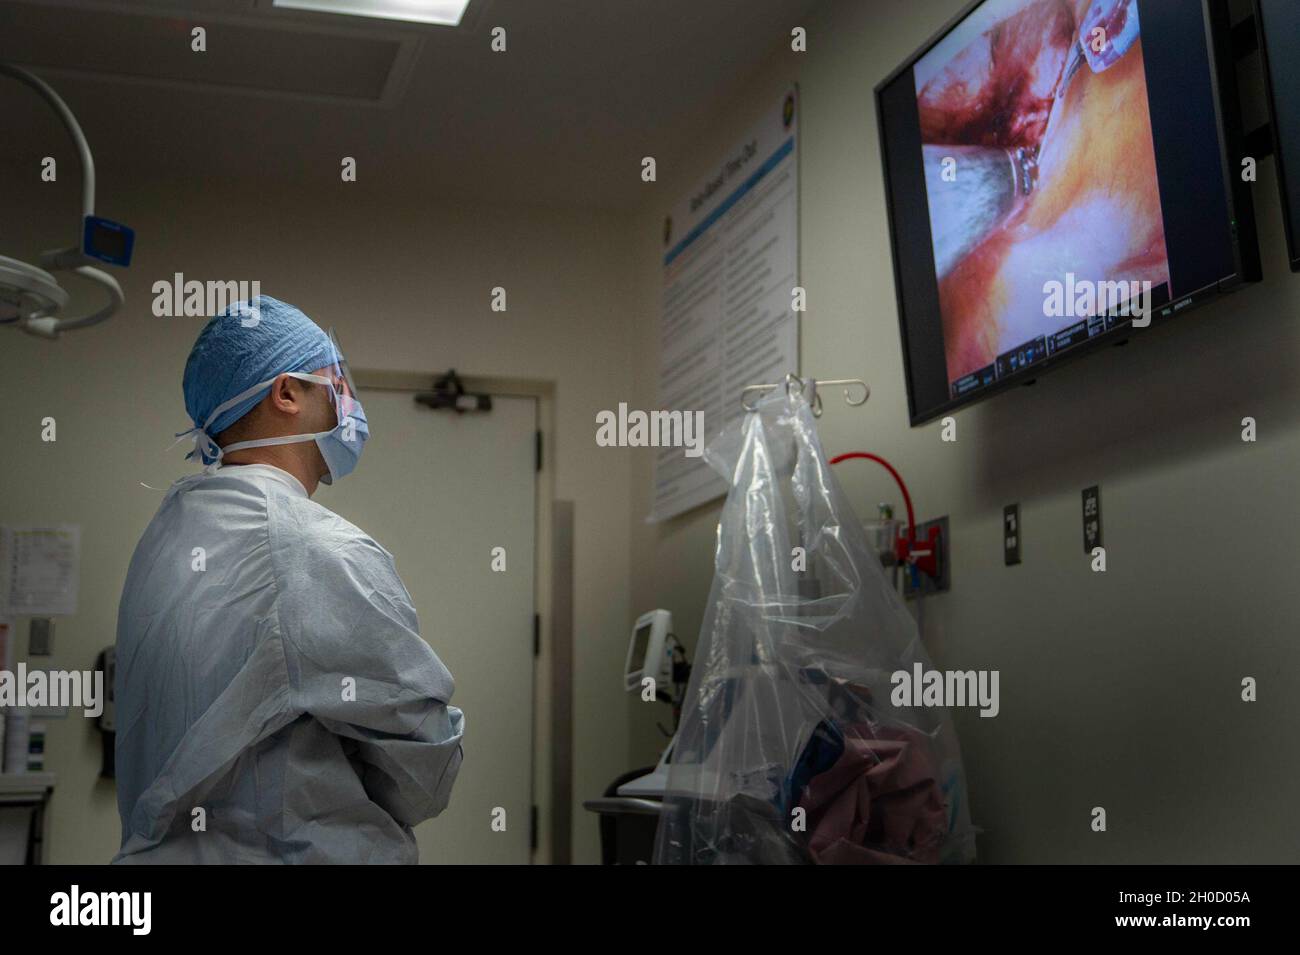 210127-N-LW757-1057 SAN DIEGO (GEN. 27, 2020) Ens. Trung ho, un'università di servizi uniformi dello studente di Scienze della Salute, osserva una procedura di riparazione dell'ernia inguinale laparoscopica assistita da robot in una delle sale operatoria dell'ospedale di gennaio 27. I sistemi chirurgici robotici, come quelli utilizzati presso NMCSD, consentono ai chirurghi di eseguire procedure minimamente invasive, e questa procedura è stata eseguita durante uno studio remoto di tele-mentoring. La missione di NMCSD è preparare i membri del servizio a schierarsi a sostegno delle forze operative, fornire servizi sanitari di alta qualità e plasmare il futuro della medicina militare Foto Stock